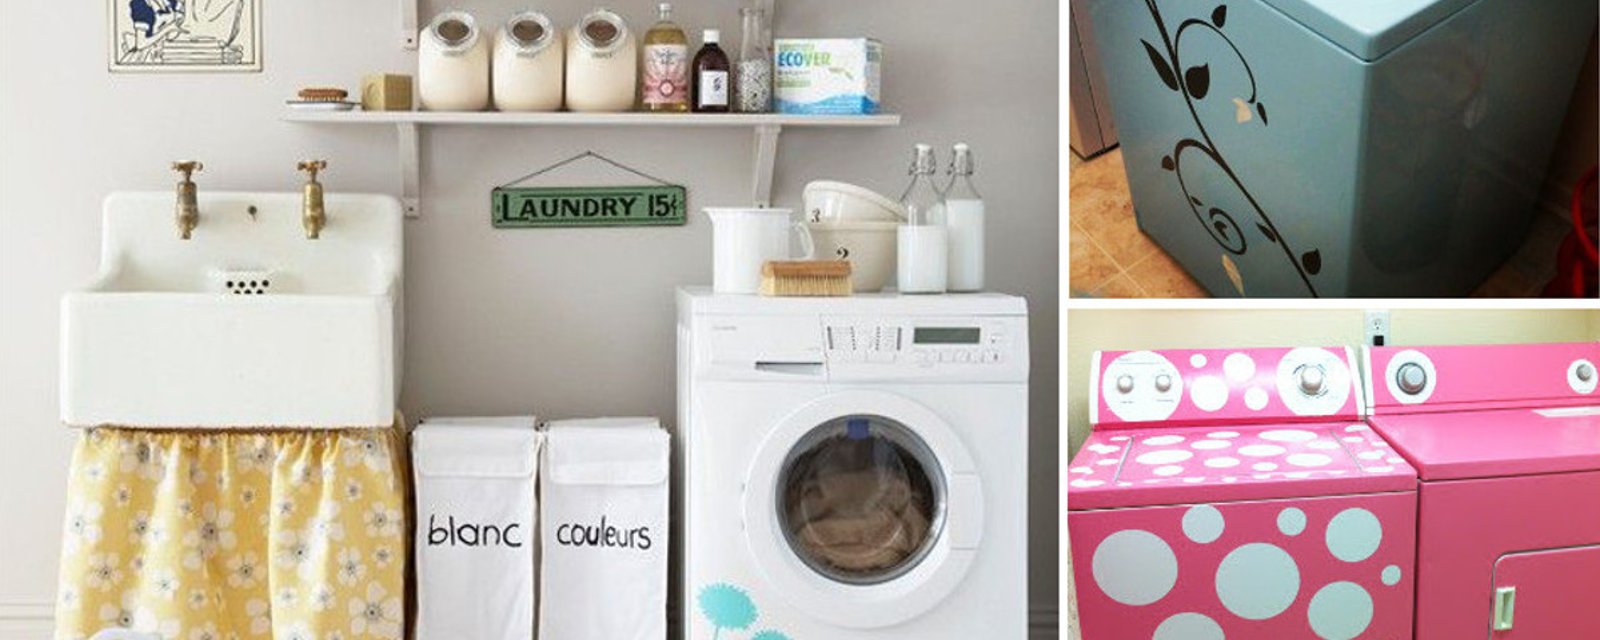 Décorez votre machine à laver grâce à ces 13 idées